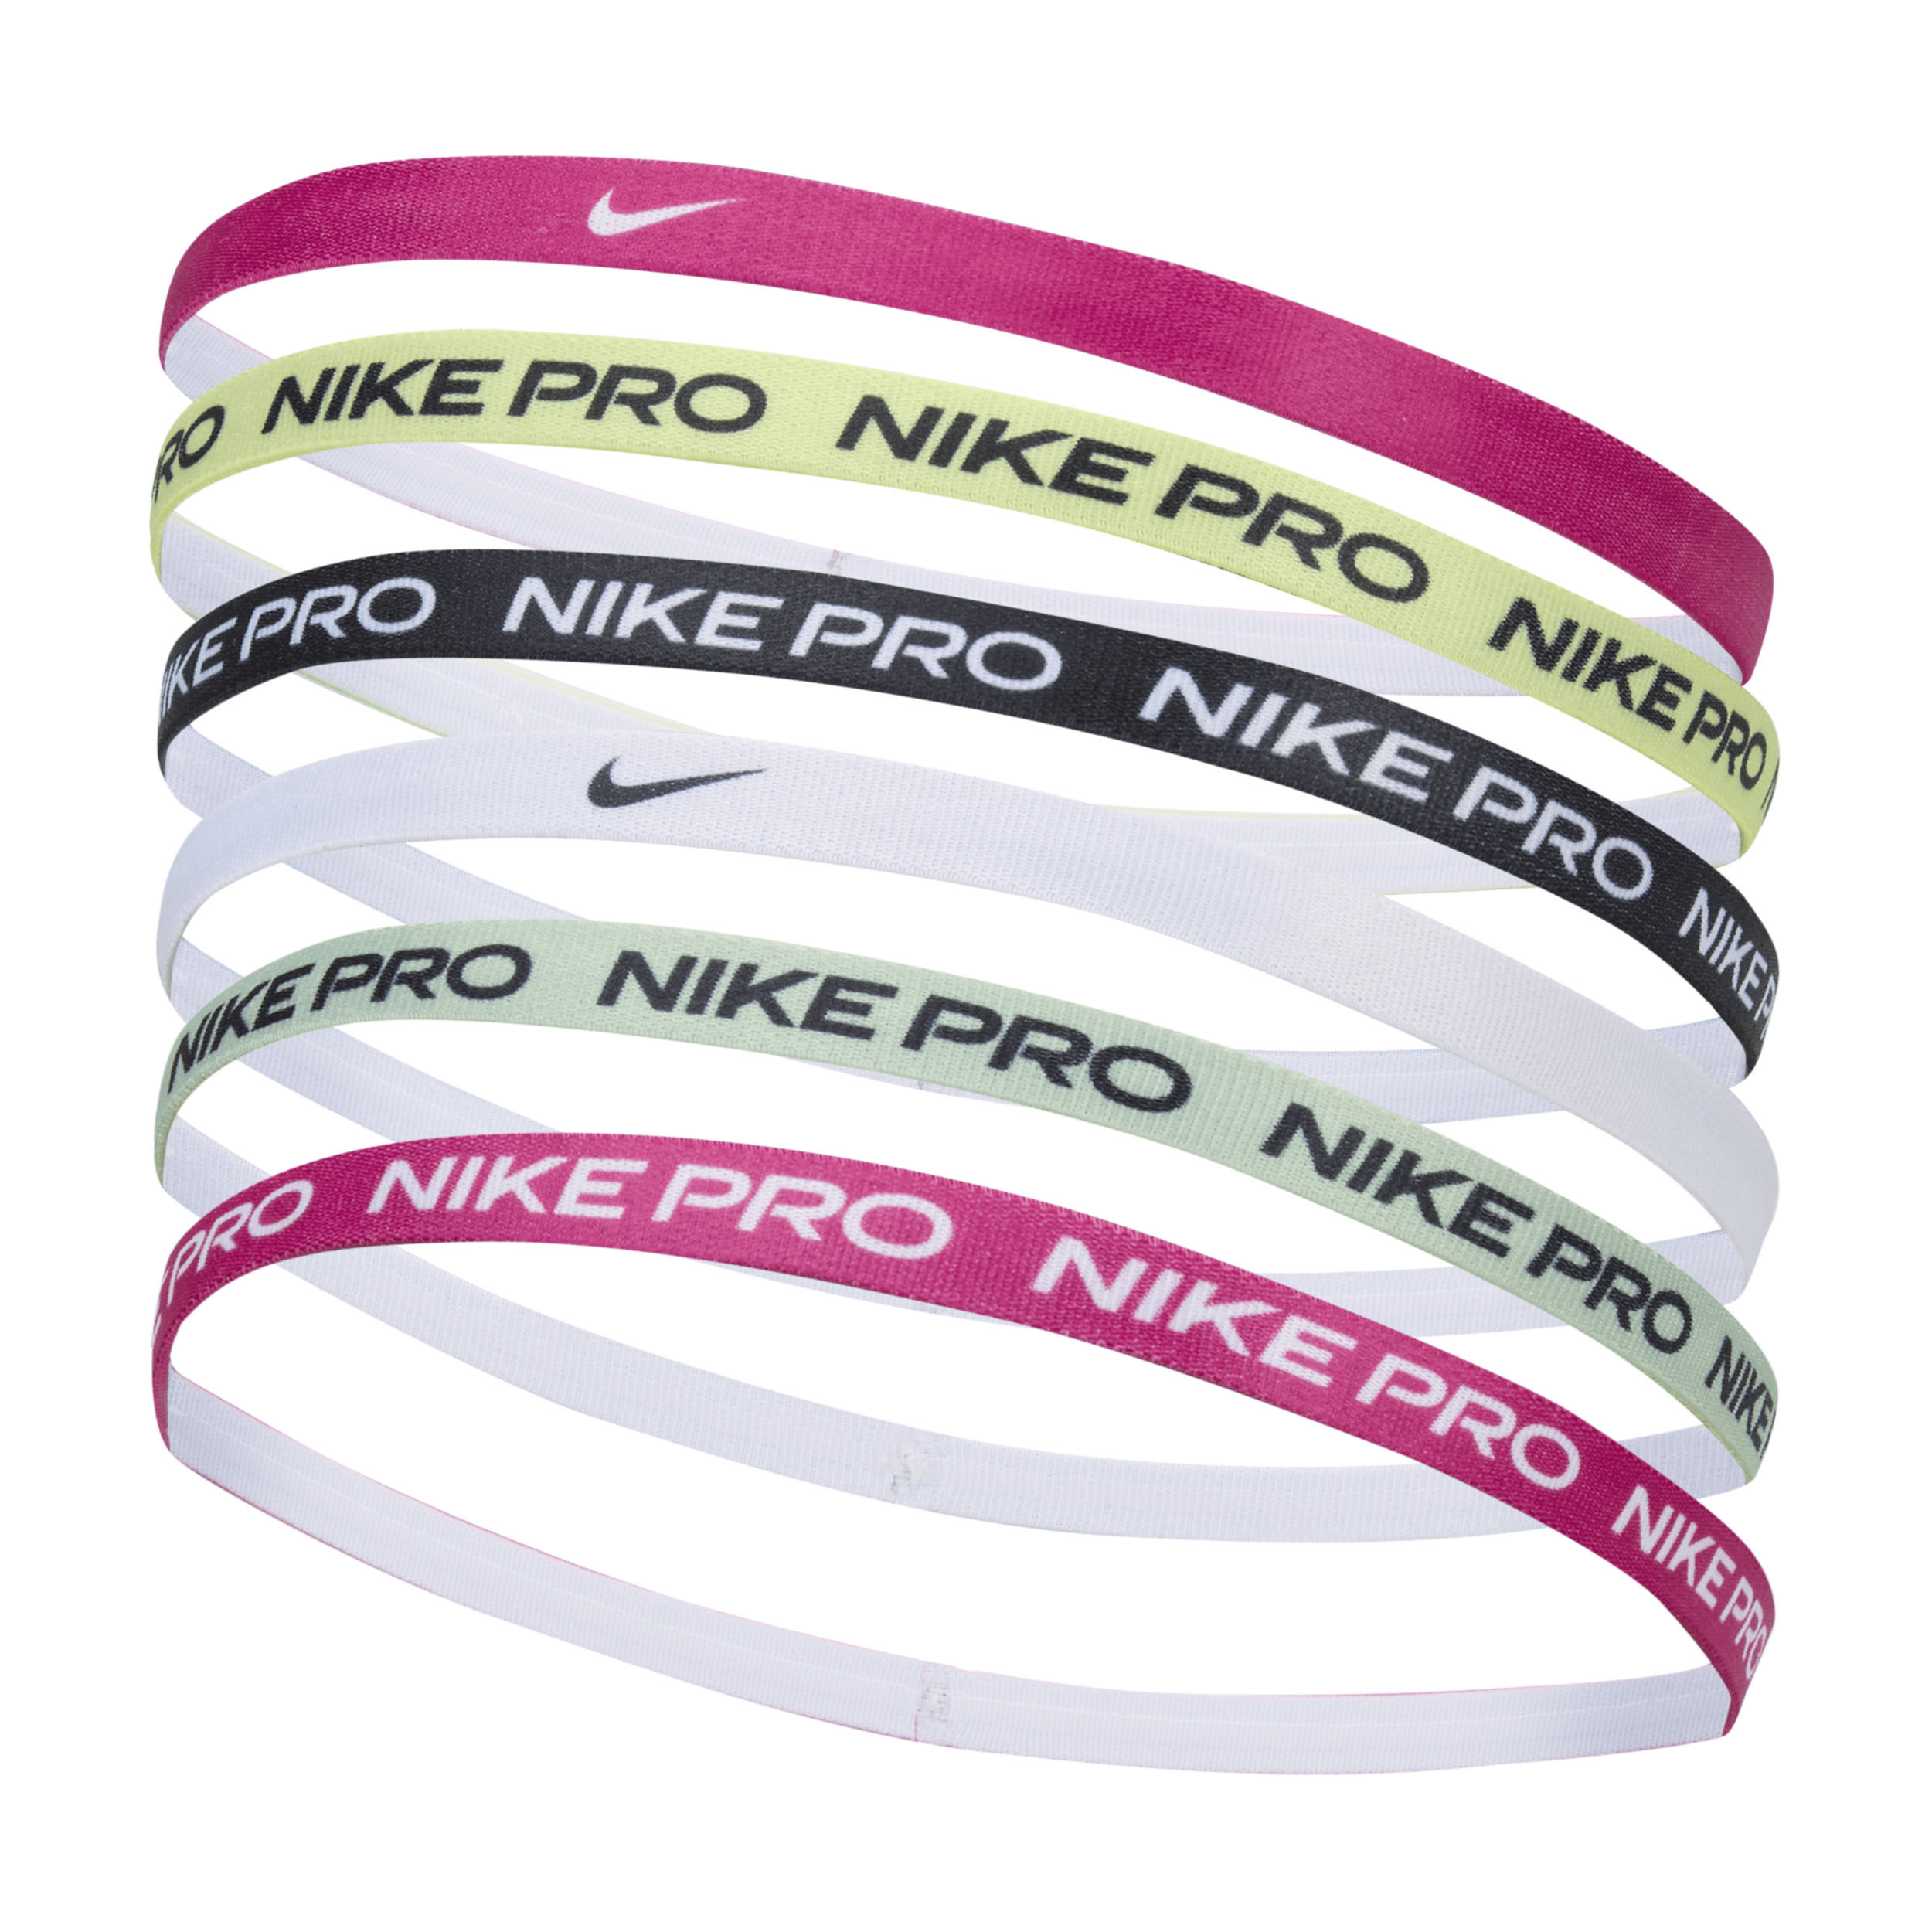 Nike Women's Headbands (6 Pack) In Multicolor